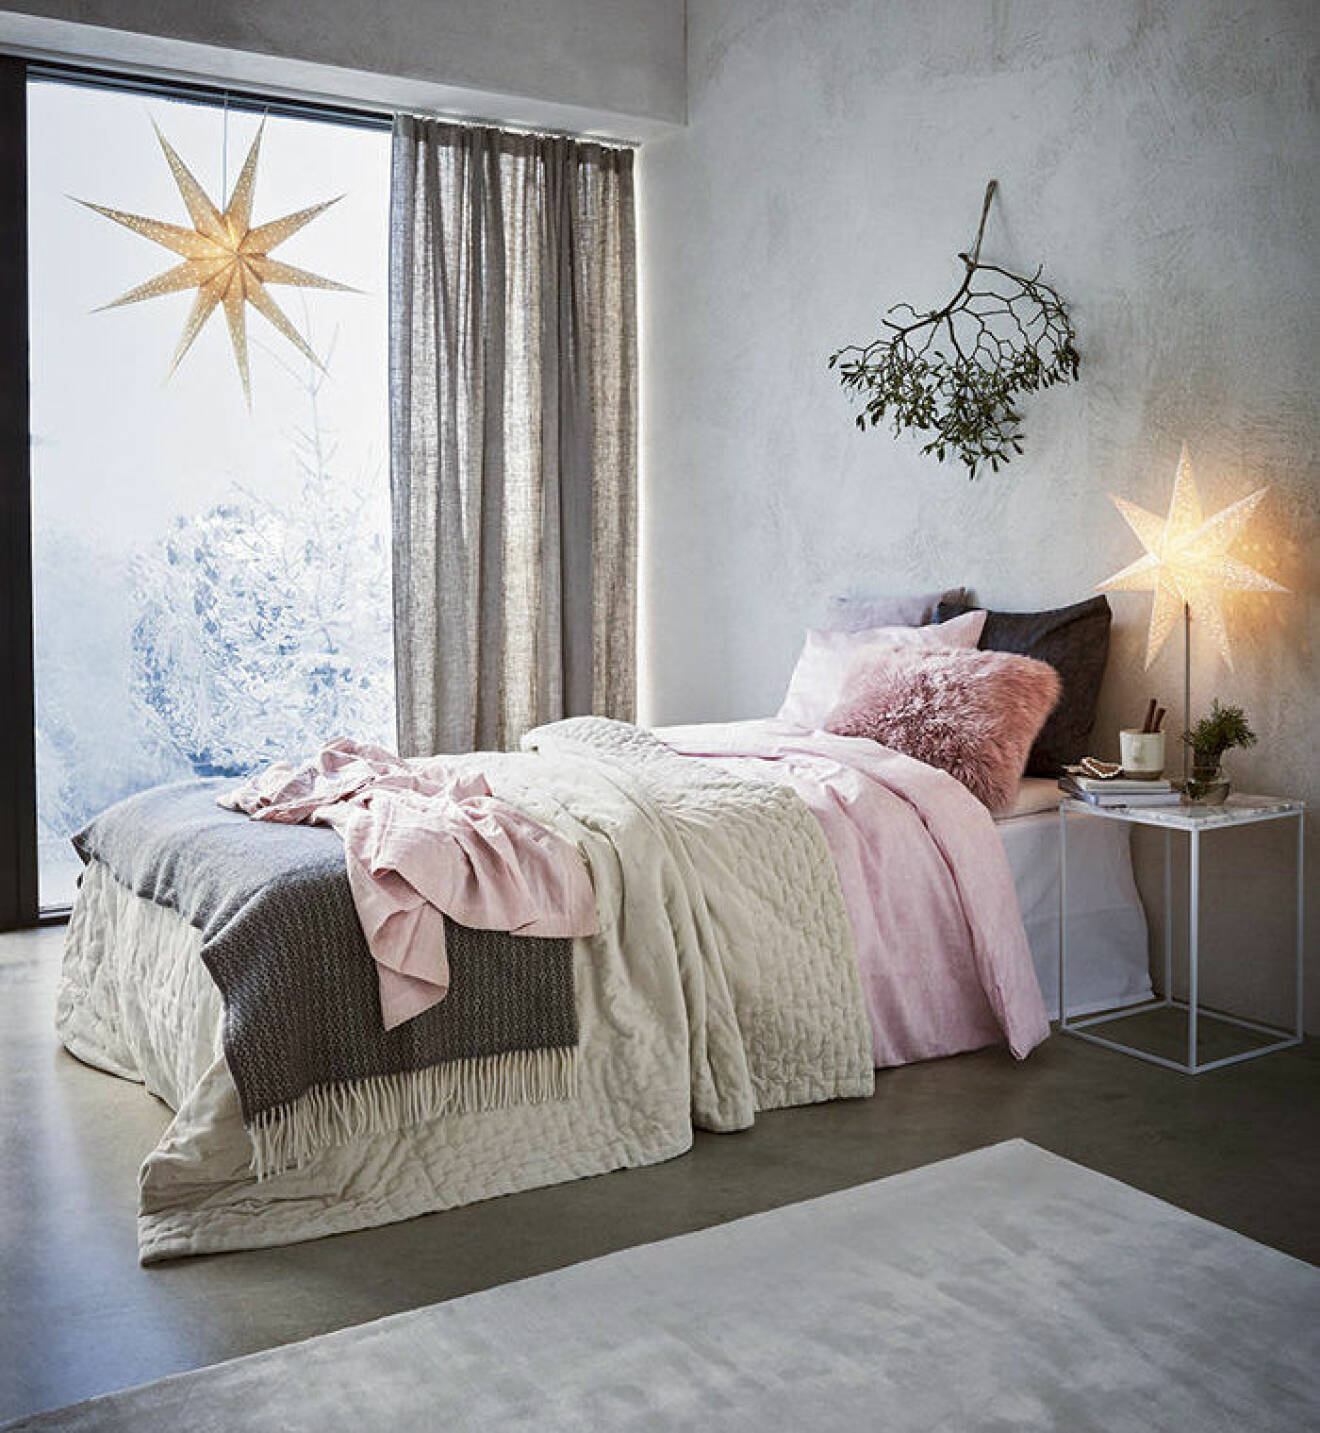 Sovrum med julstjärnor och vacker bäddning i rosa toner.